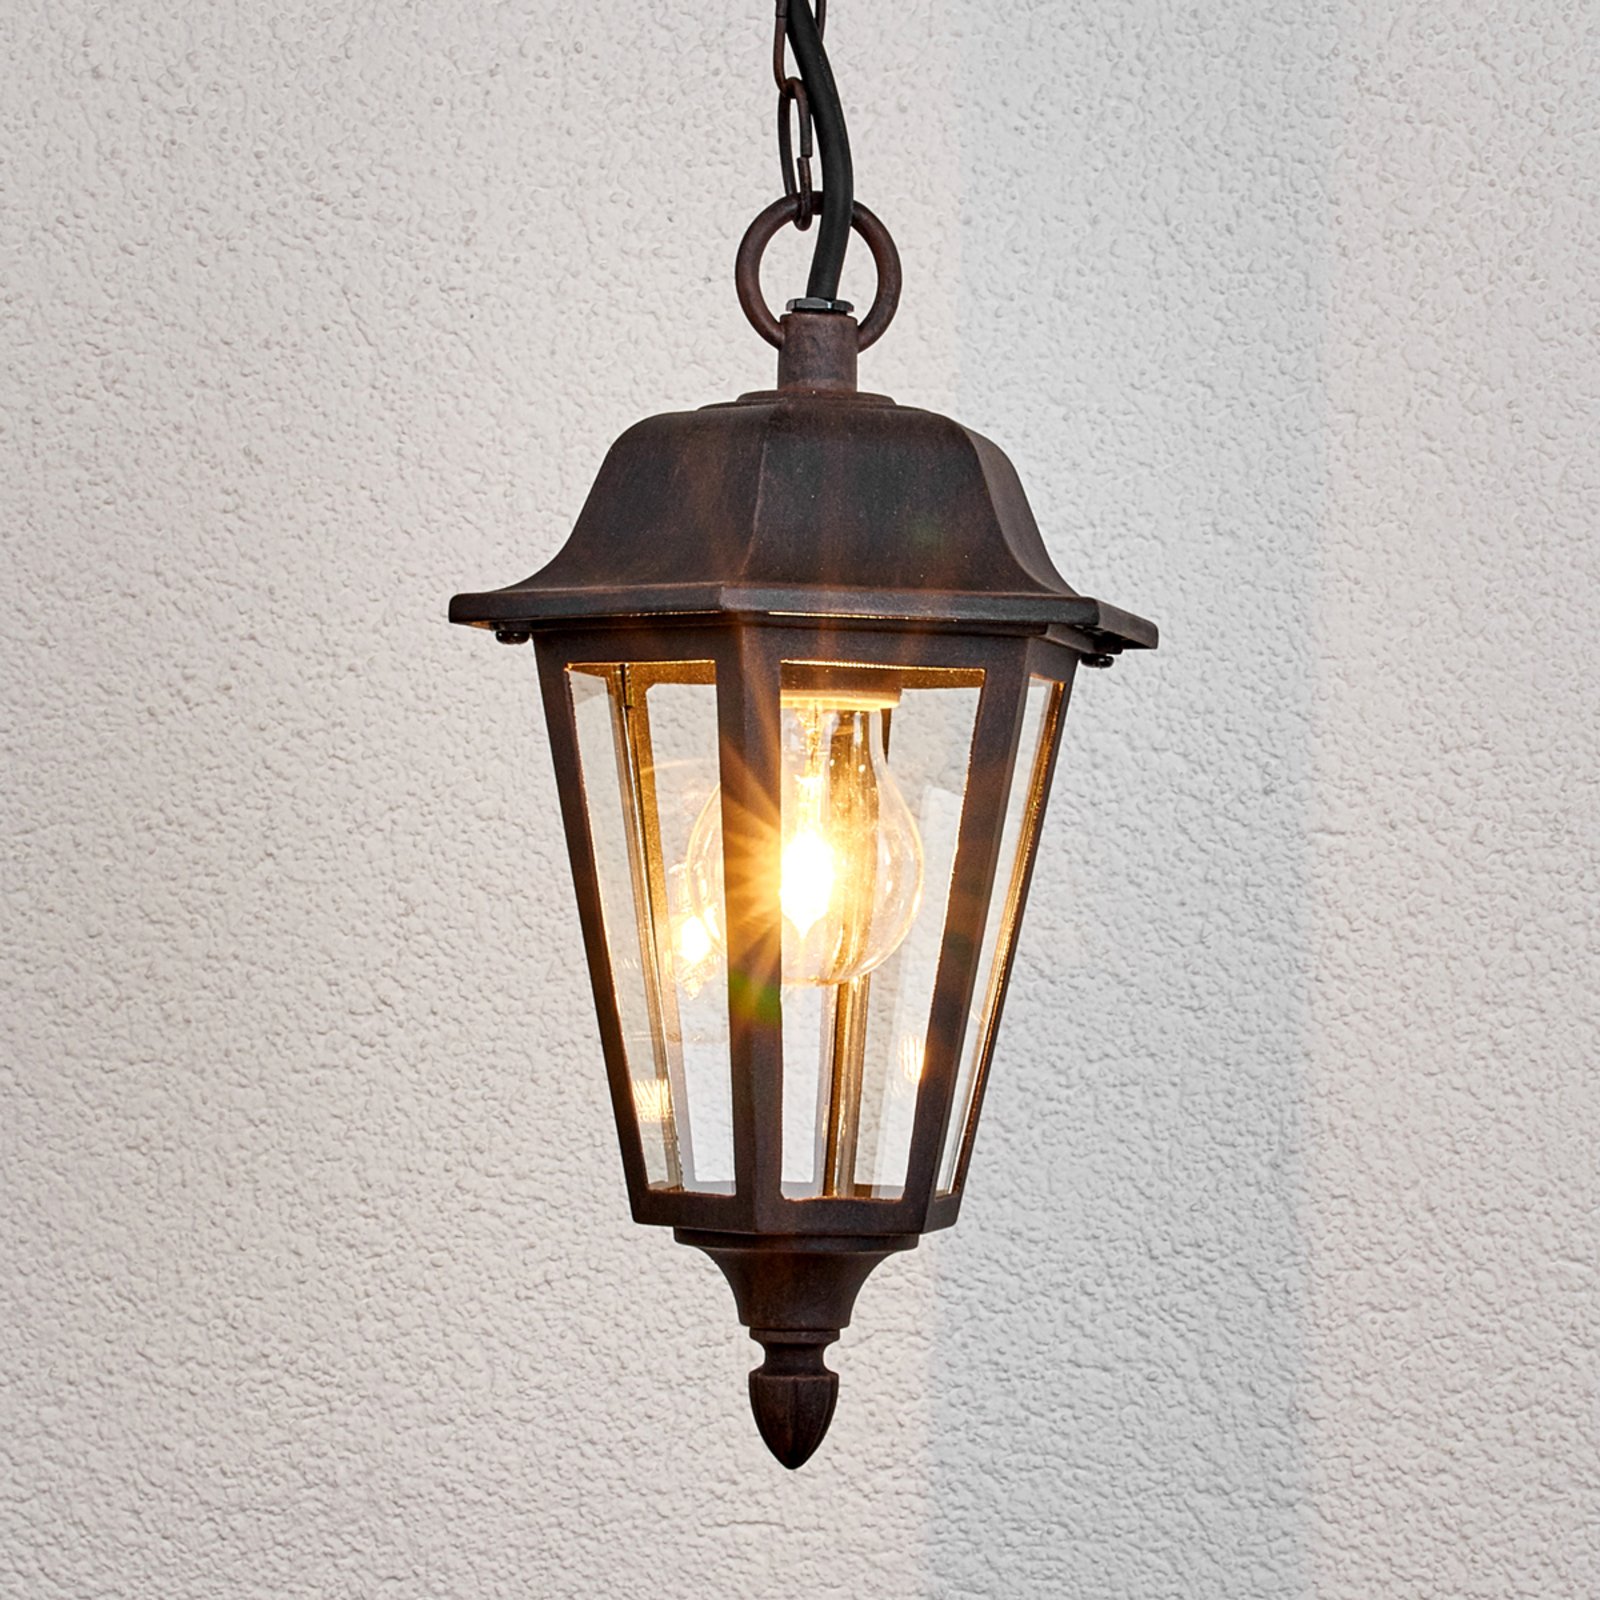 Outdoor hanging light Lamina in lantern form